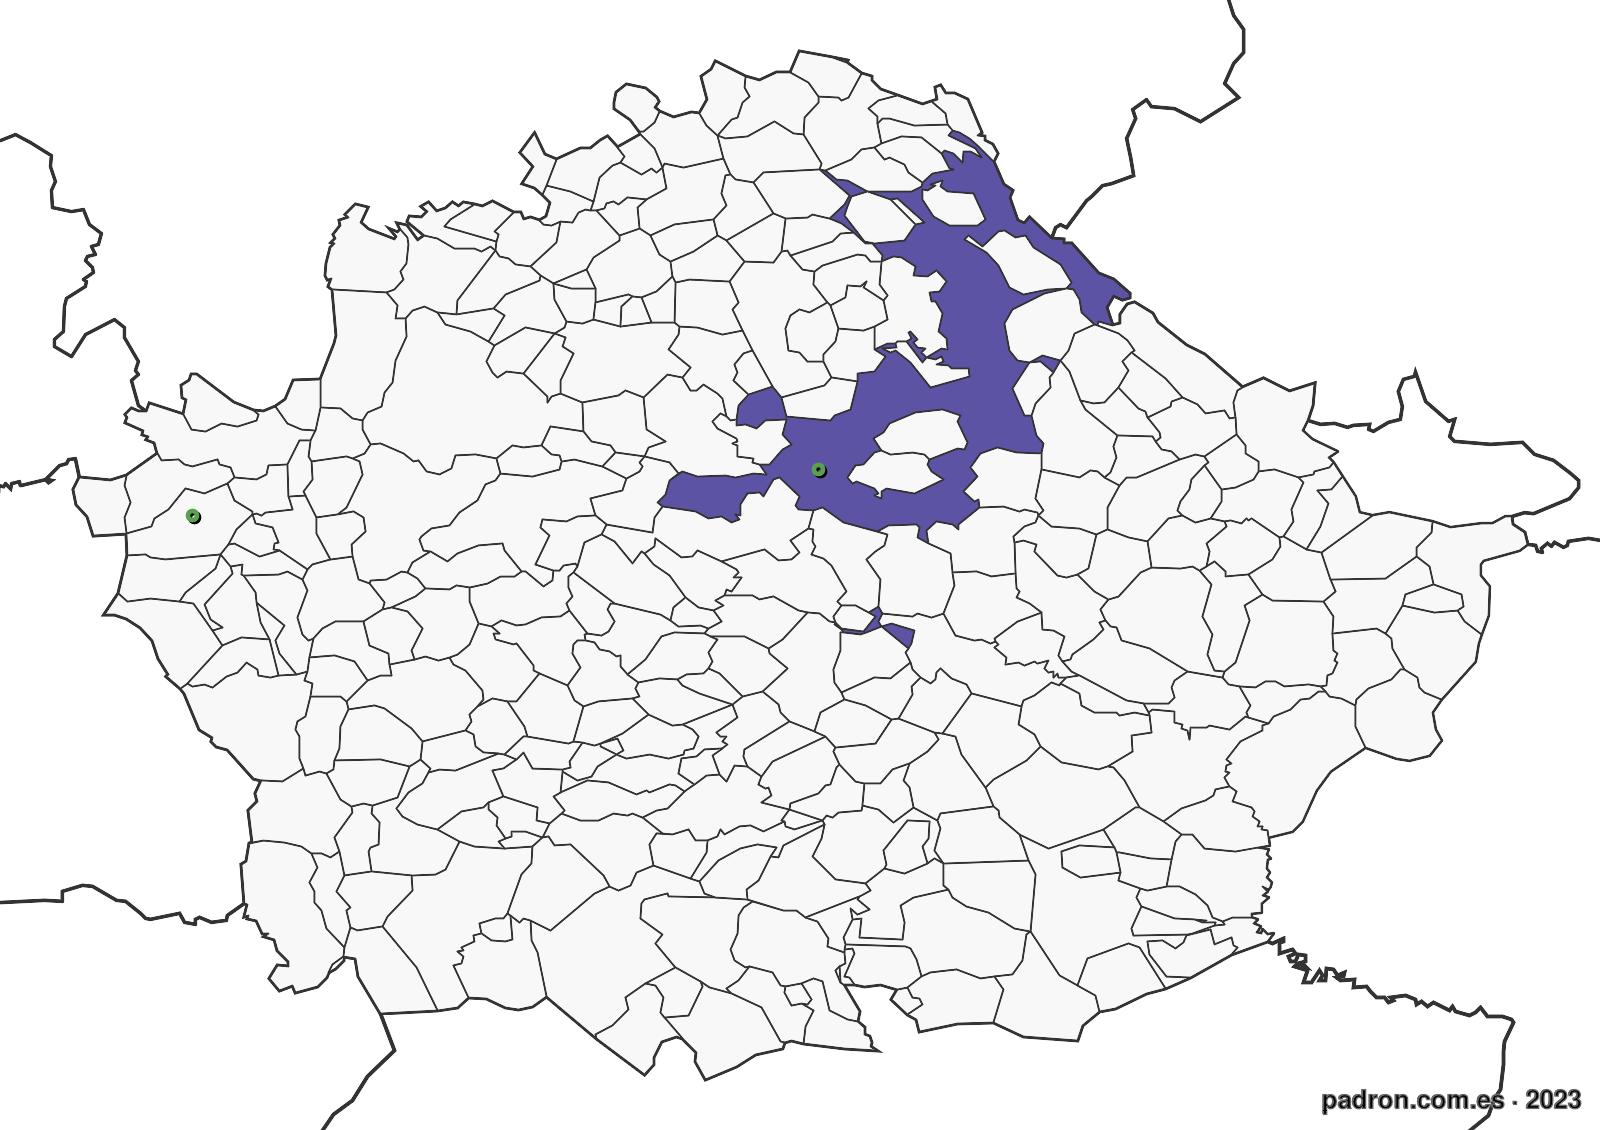 georgianos en cuenca.